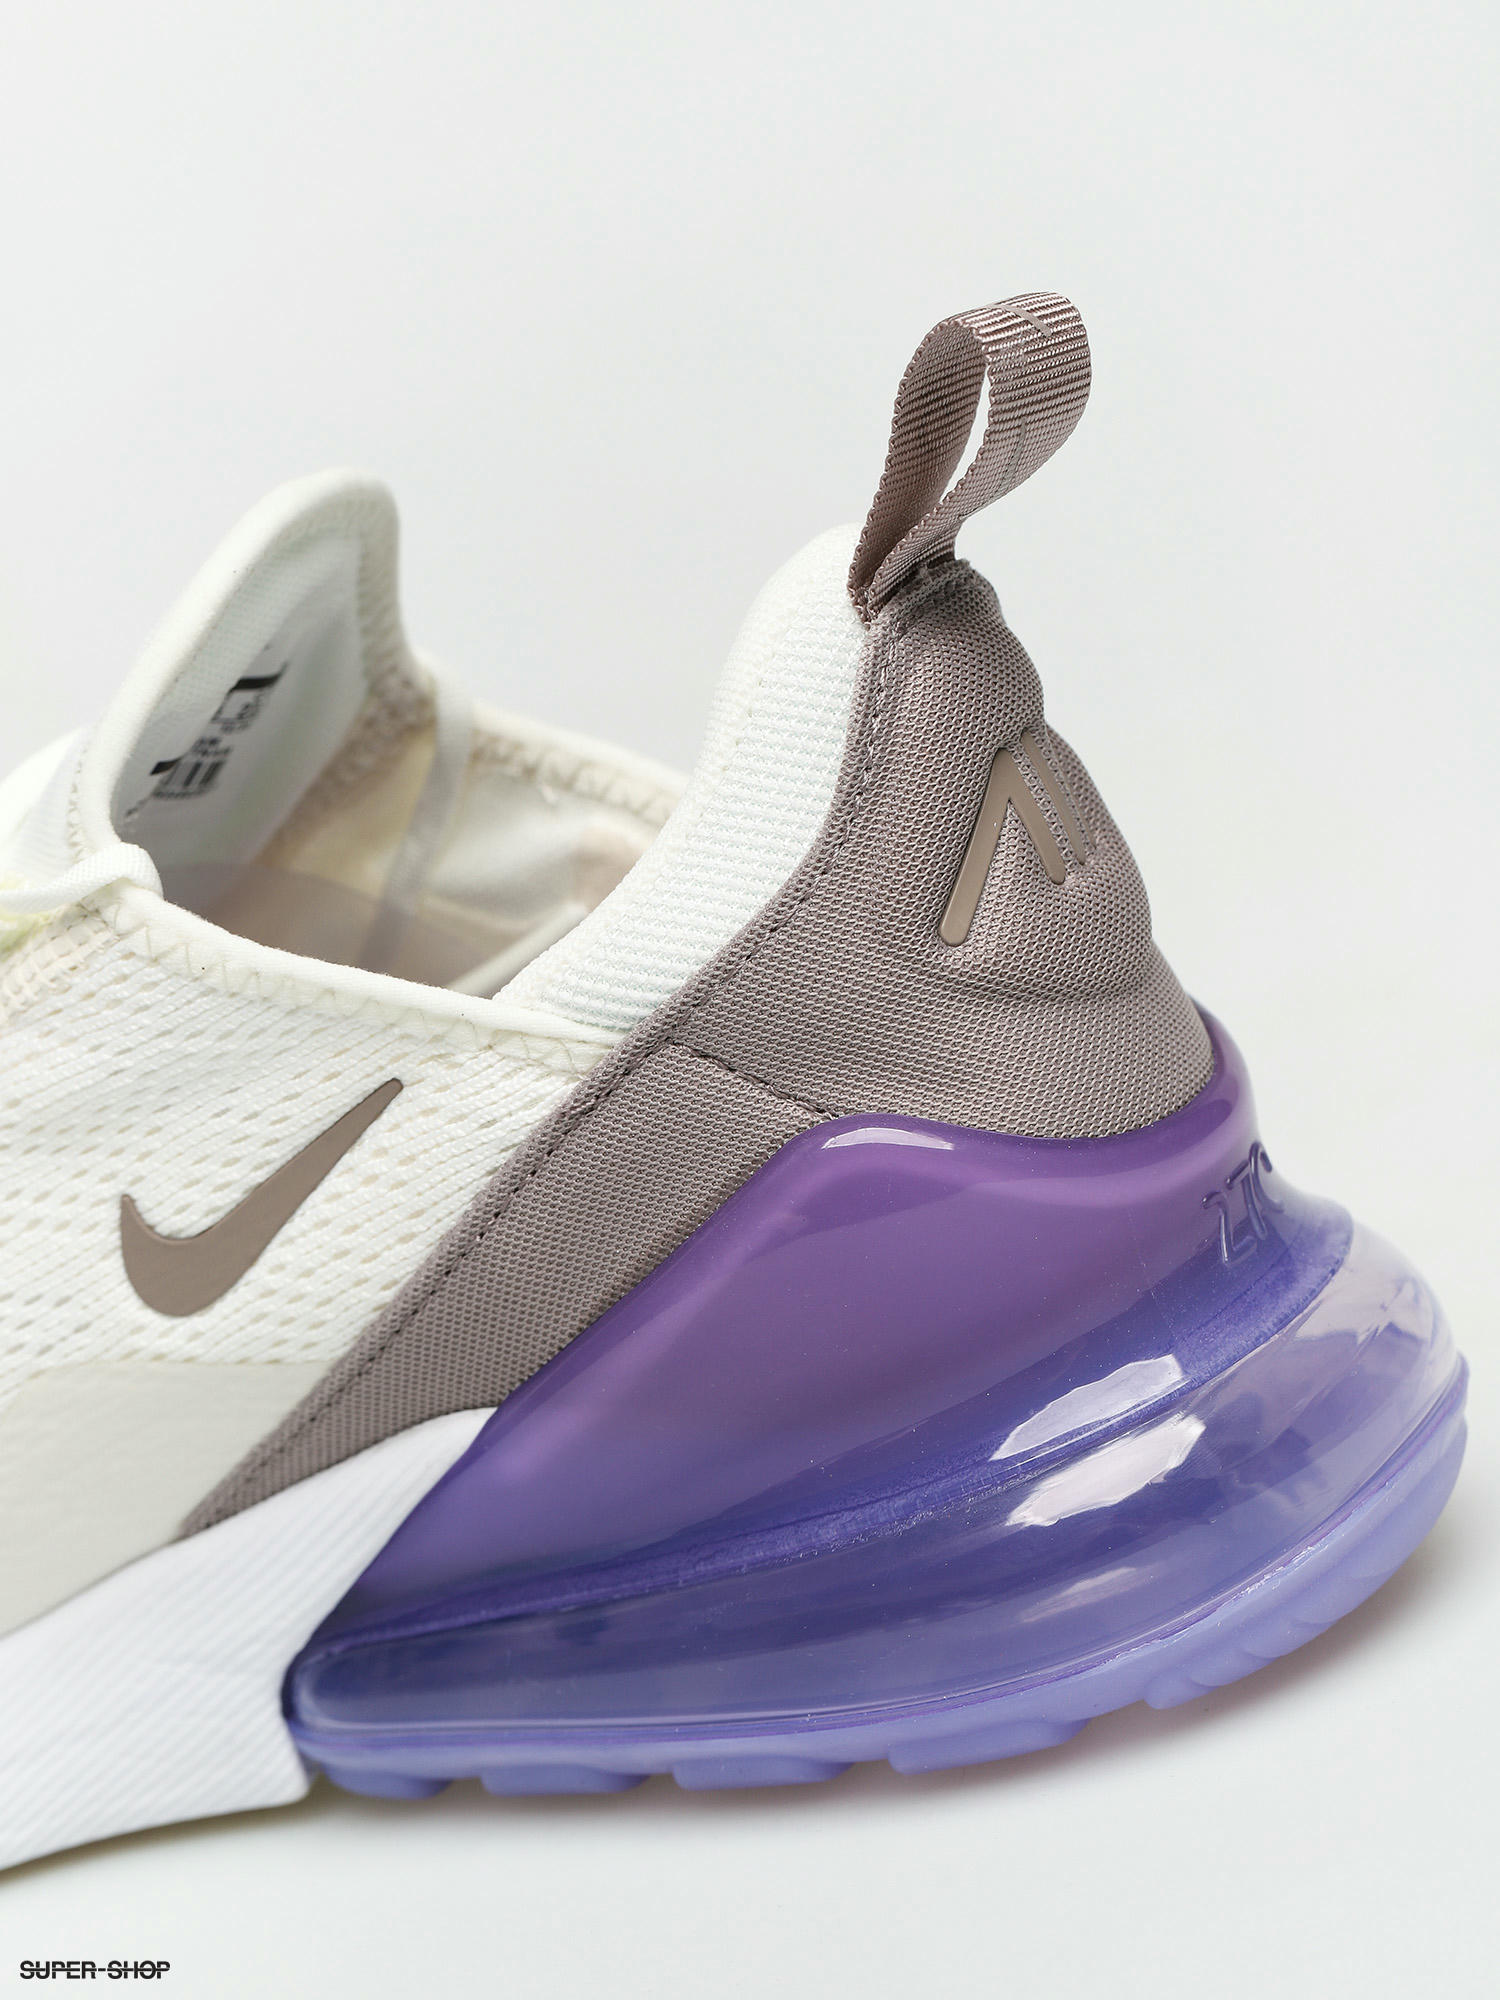 Nike Air Max 270 Shoes Wmn (sail/pumice space purple white)